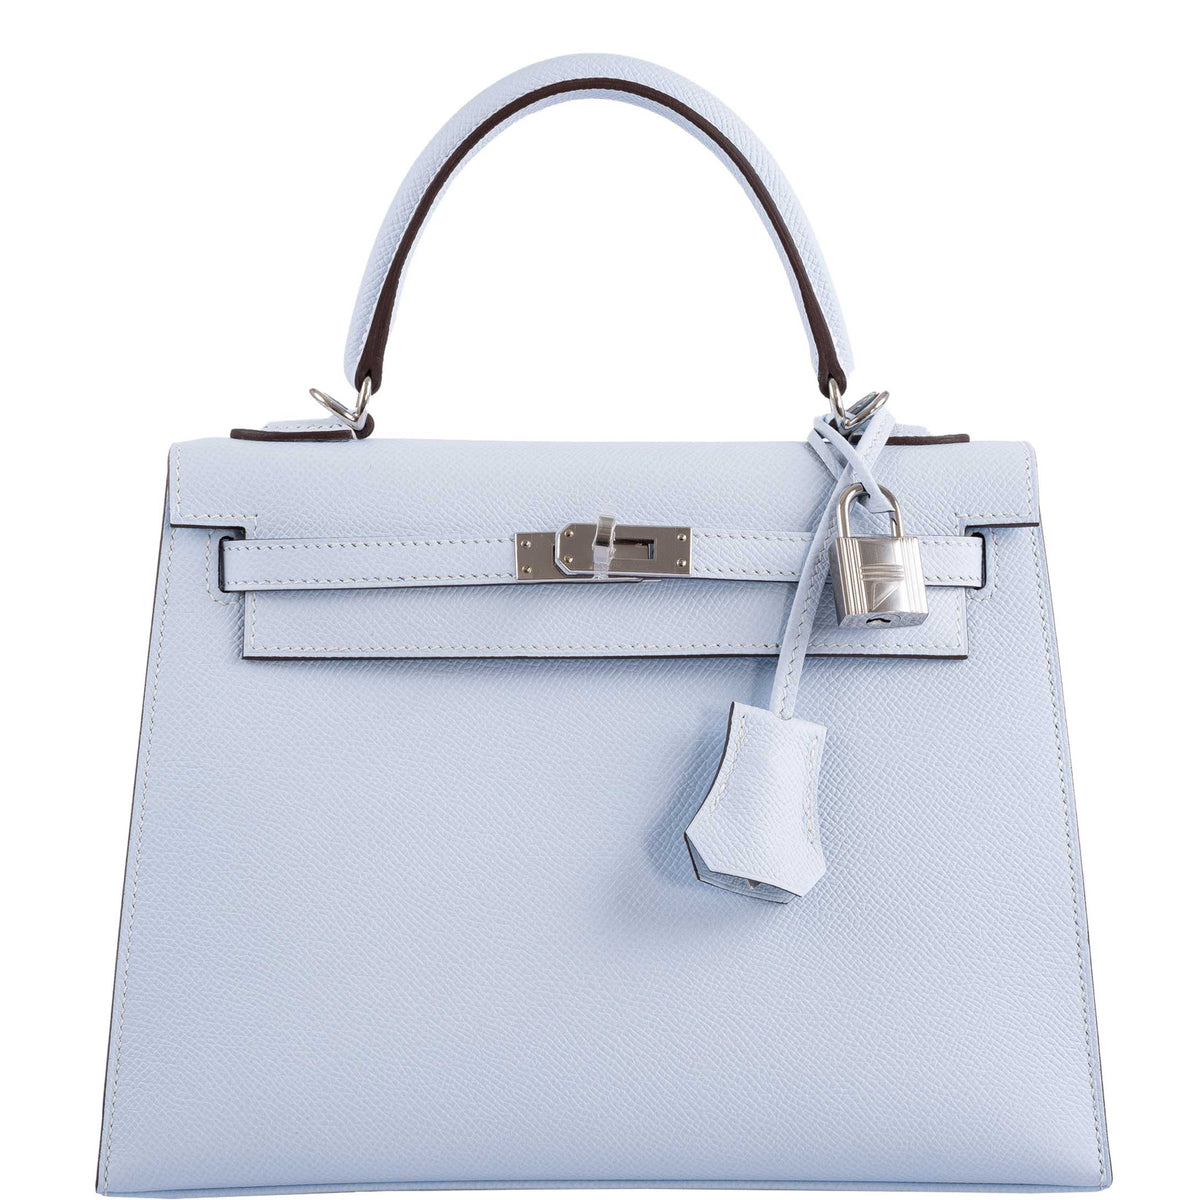 New] Hermès Bleu Brume Epsom Sellier Birkin 25cm Palladium